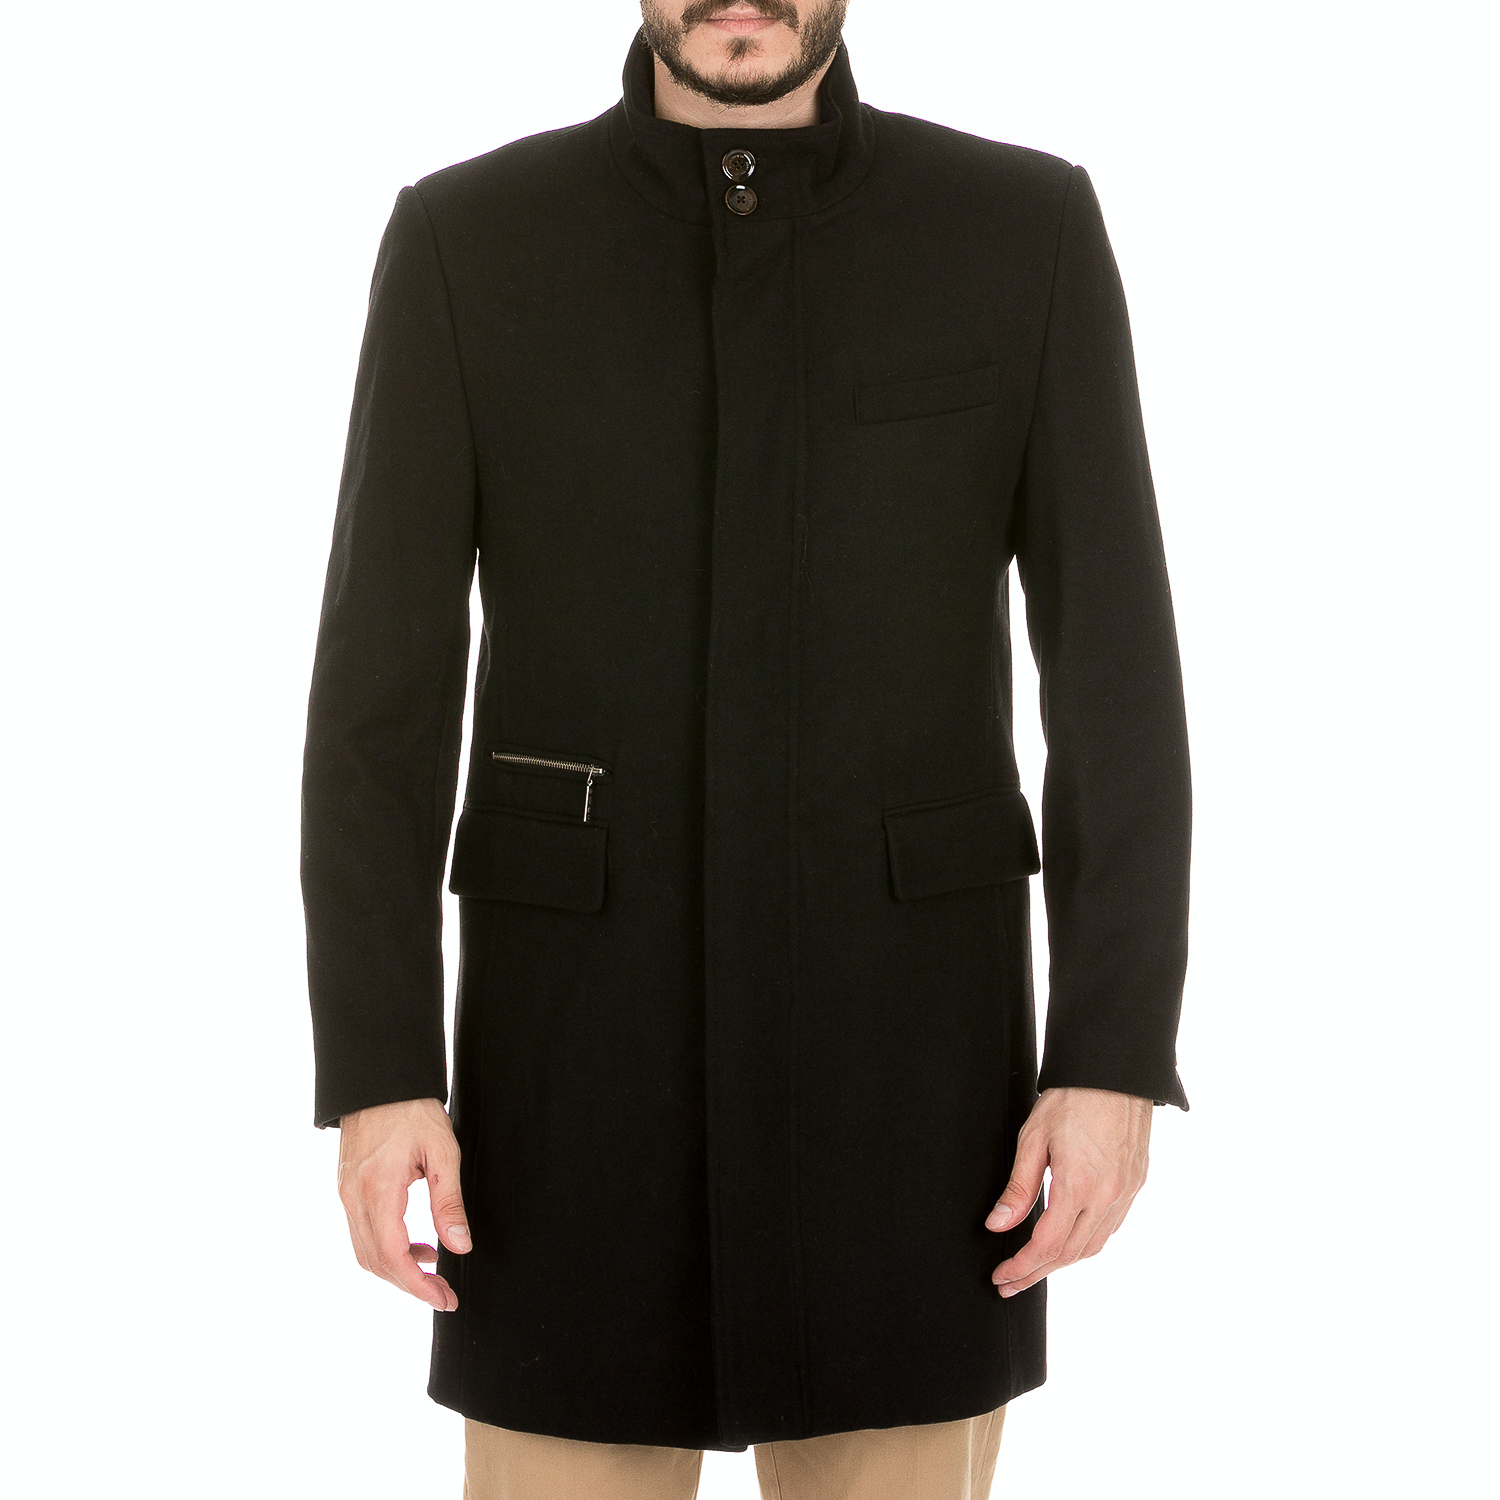 Ανδρικά/Ρούχα/Πανωφόρια/Παλτό DORS - Ανδρικό παλτό DORS μαύρο